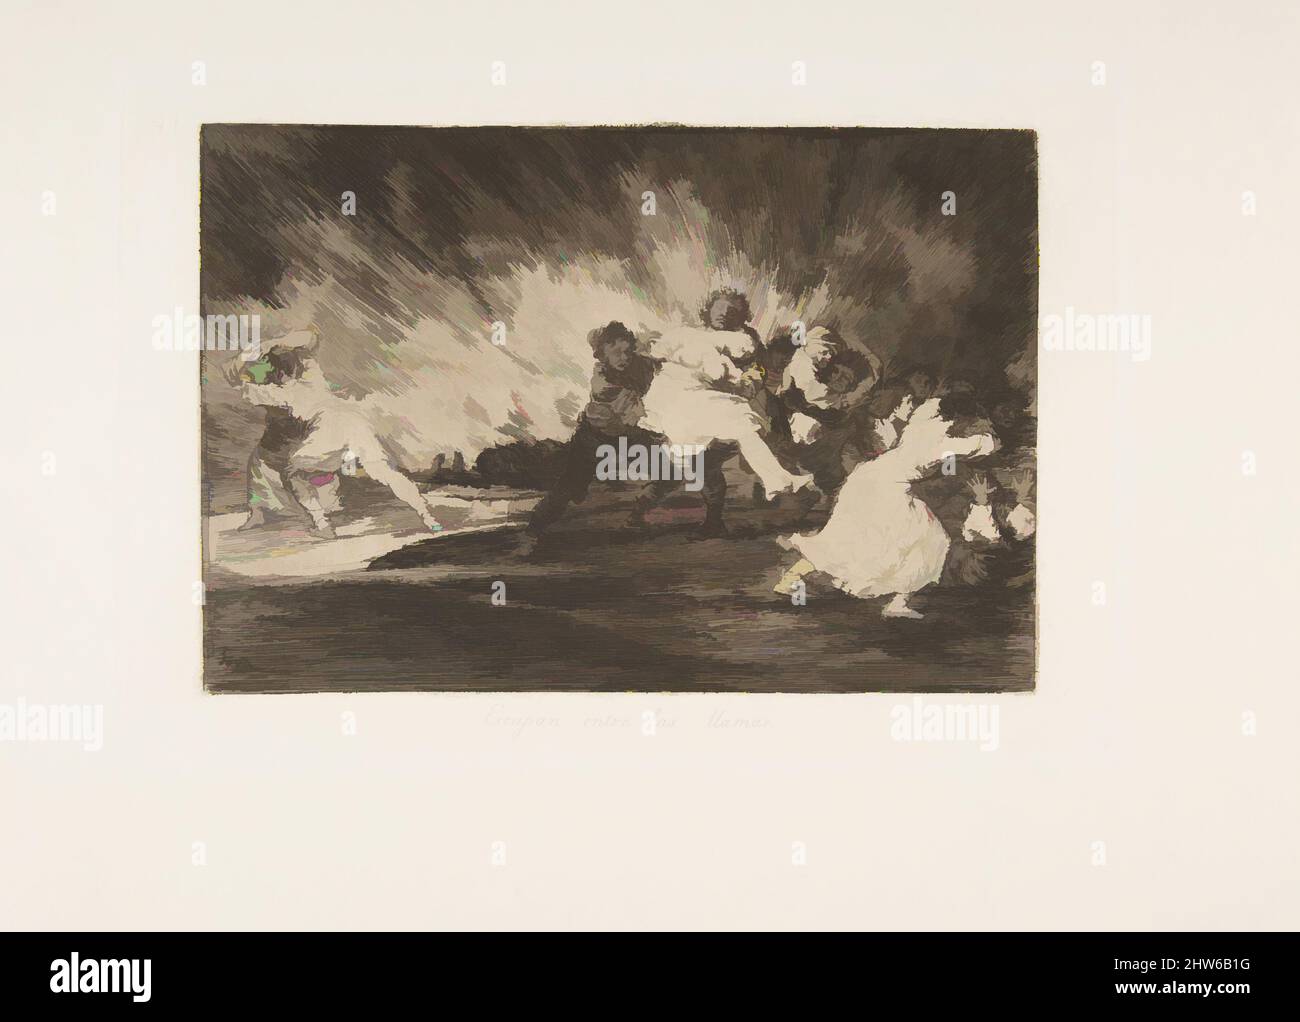 Art inspiré par la planche 41 de « les désastres de la guerre » (Los Desastres de la Guerra): « Ils s'échappent par les flammes. » (Escapan entre les lamas), 1810 (publié en 1863), Etching et burin, plaque : 6 5/16 × 9 1/4 po. (16 × 23,5 cm), Prints, Goya (Francisco de Goya y Lucientes) (espagnol, oeuvres classiques modernisées par Artotop avec une touche de modernité. Formes, couleur et valeur, impact visuel accrocheur sur l'art émotions par la liberté d'œuvres d'art d'une manière contemporaine. Un message intemporel qui cherche une nouvelle direction créative. Artistes qui se tournent vers le support numérique et créent le NFT Artotop Banque D'Images